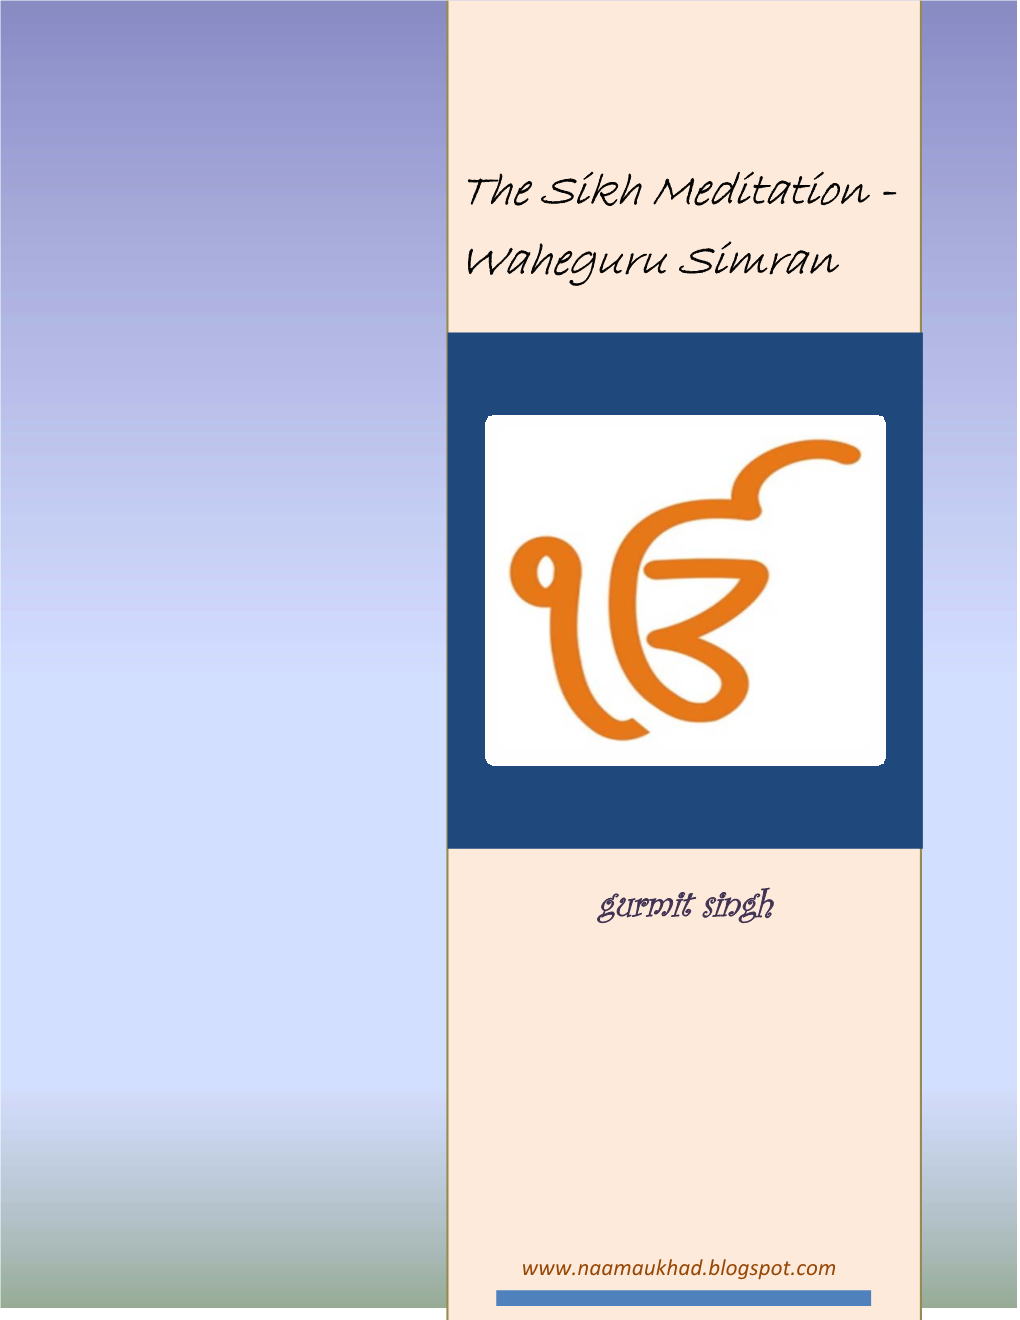 The Sikh Meditation